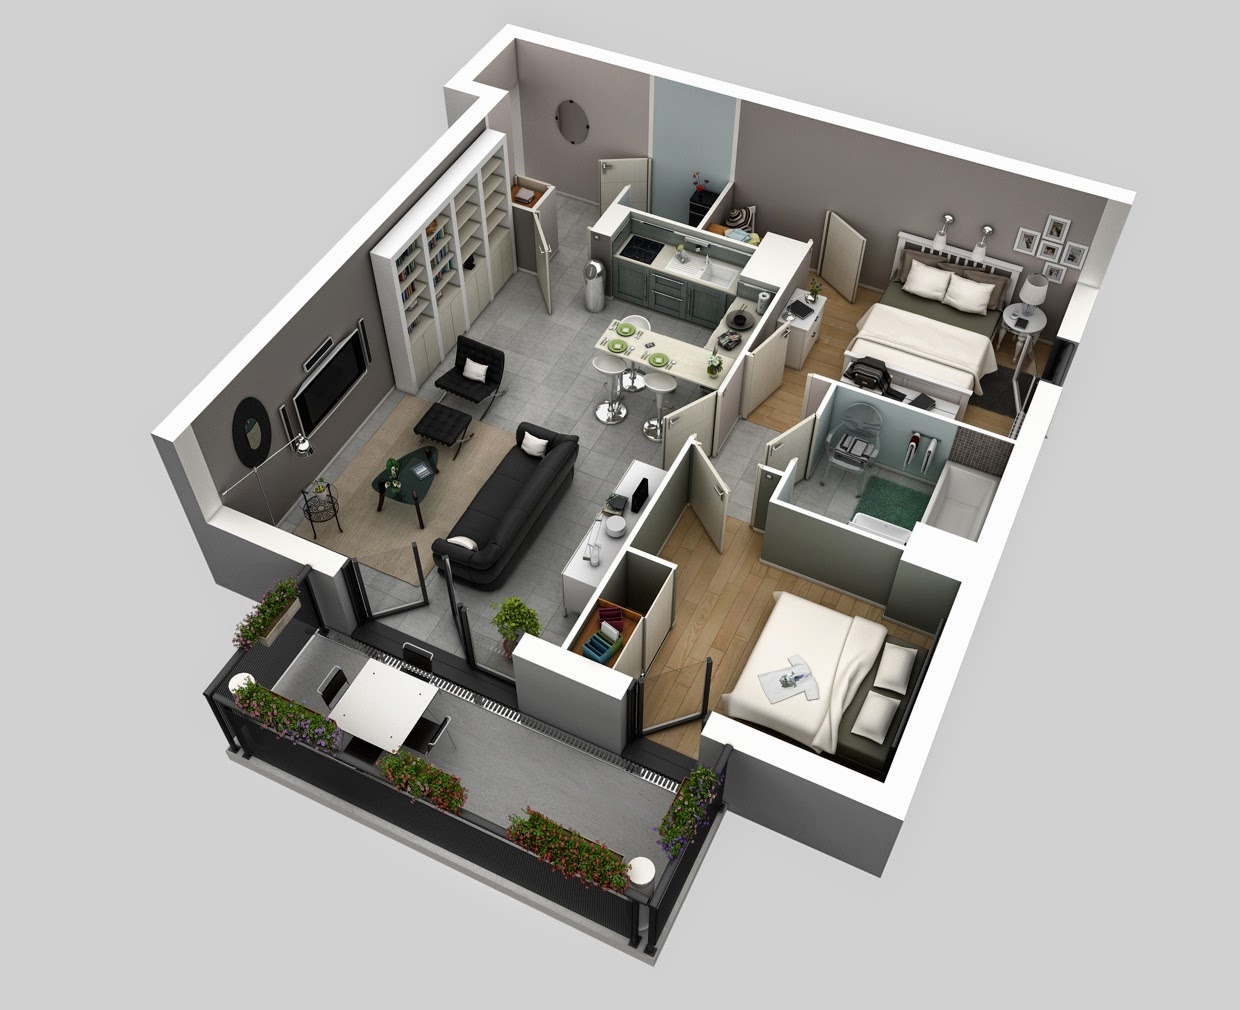 65 Desain Interior 3D Rumah Minimalis Terbaru 2017 2018 Rumahku Unik